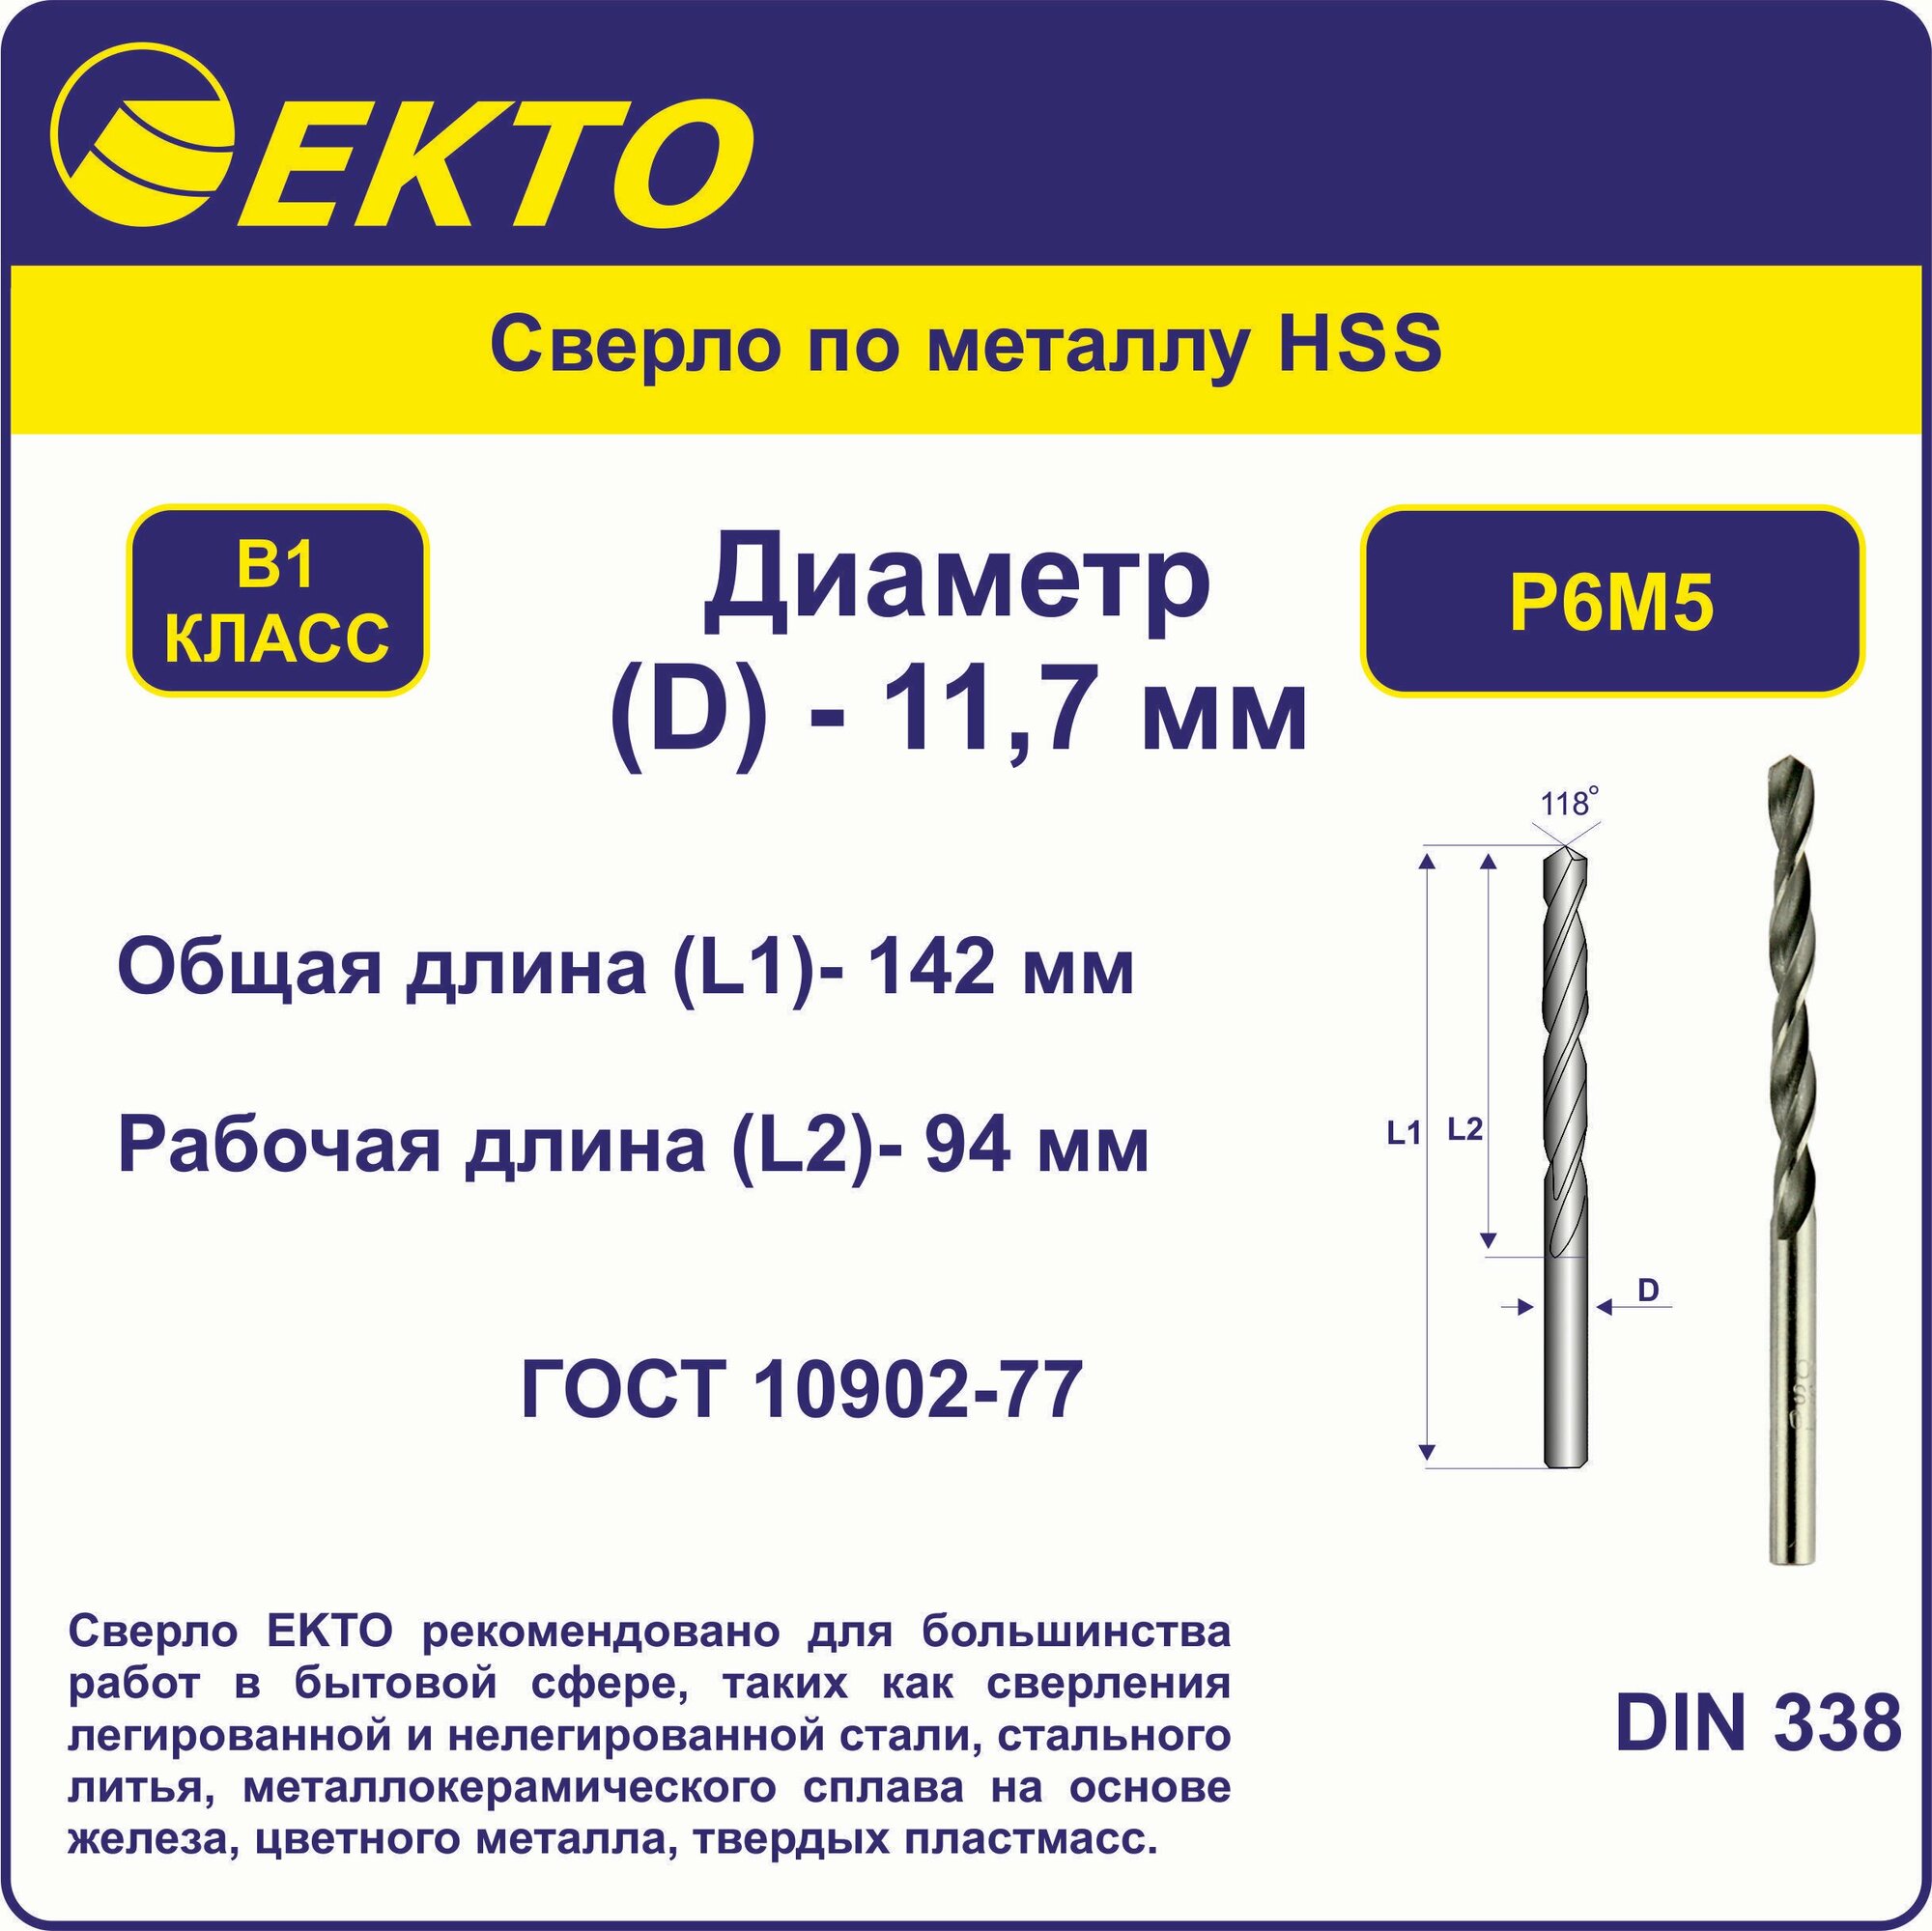 Сверло по металлу HSS 11,7 мм цилиндрический хвостовик EKTO